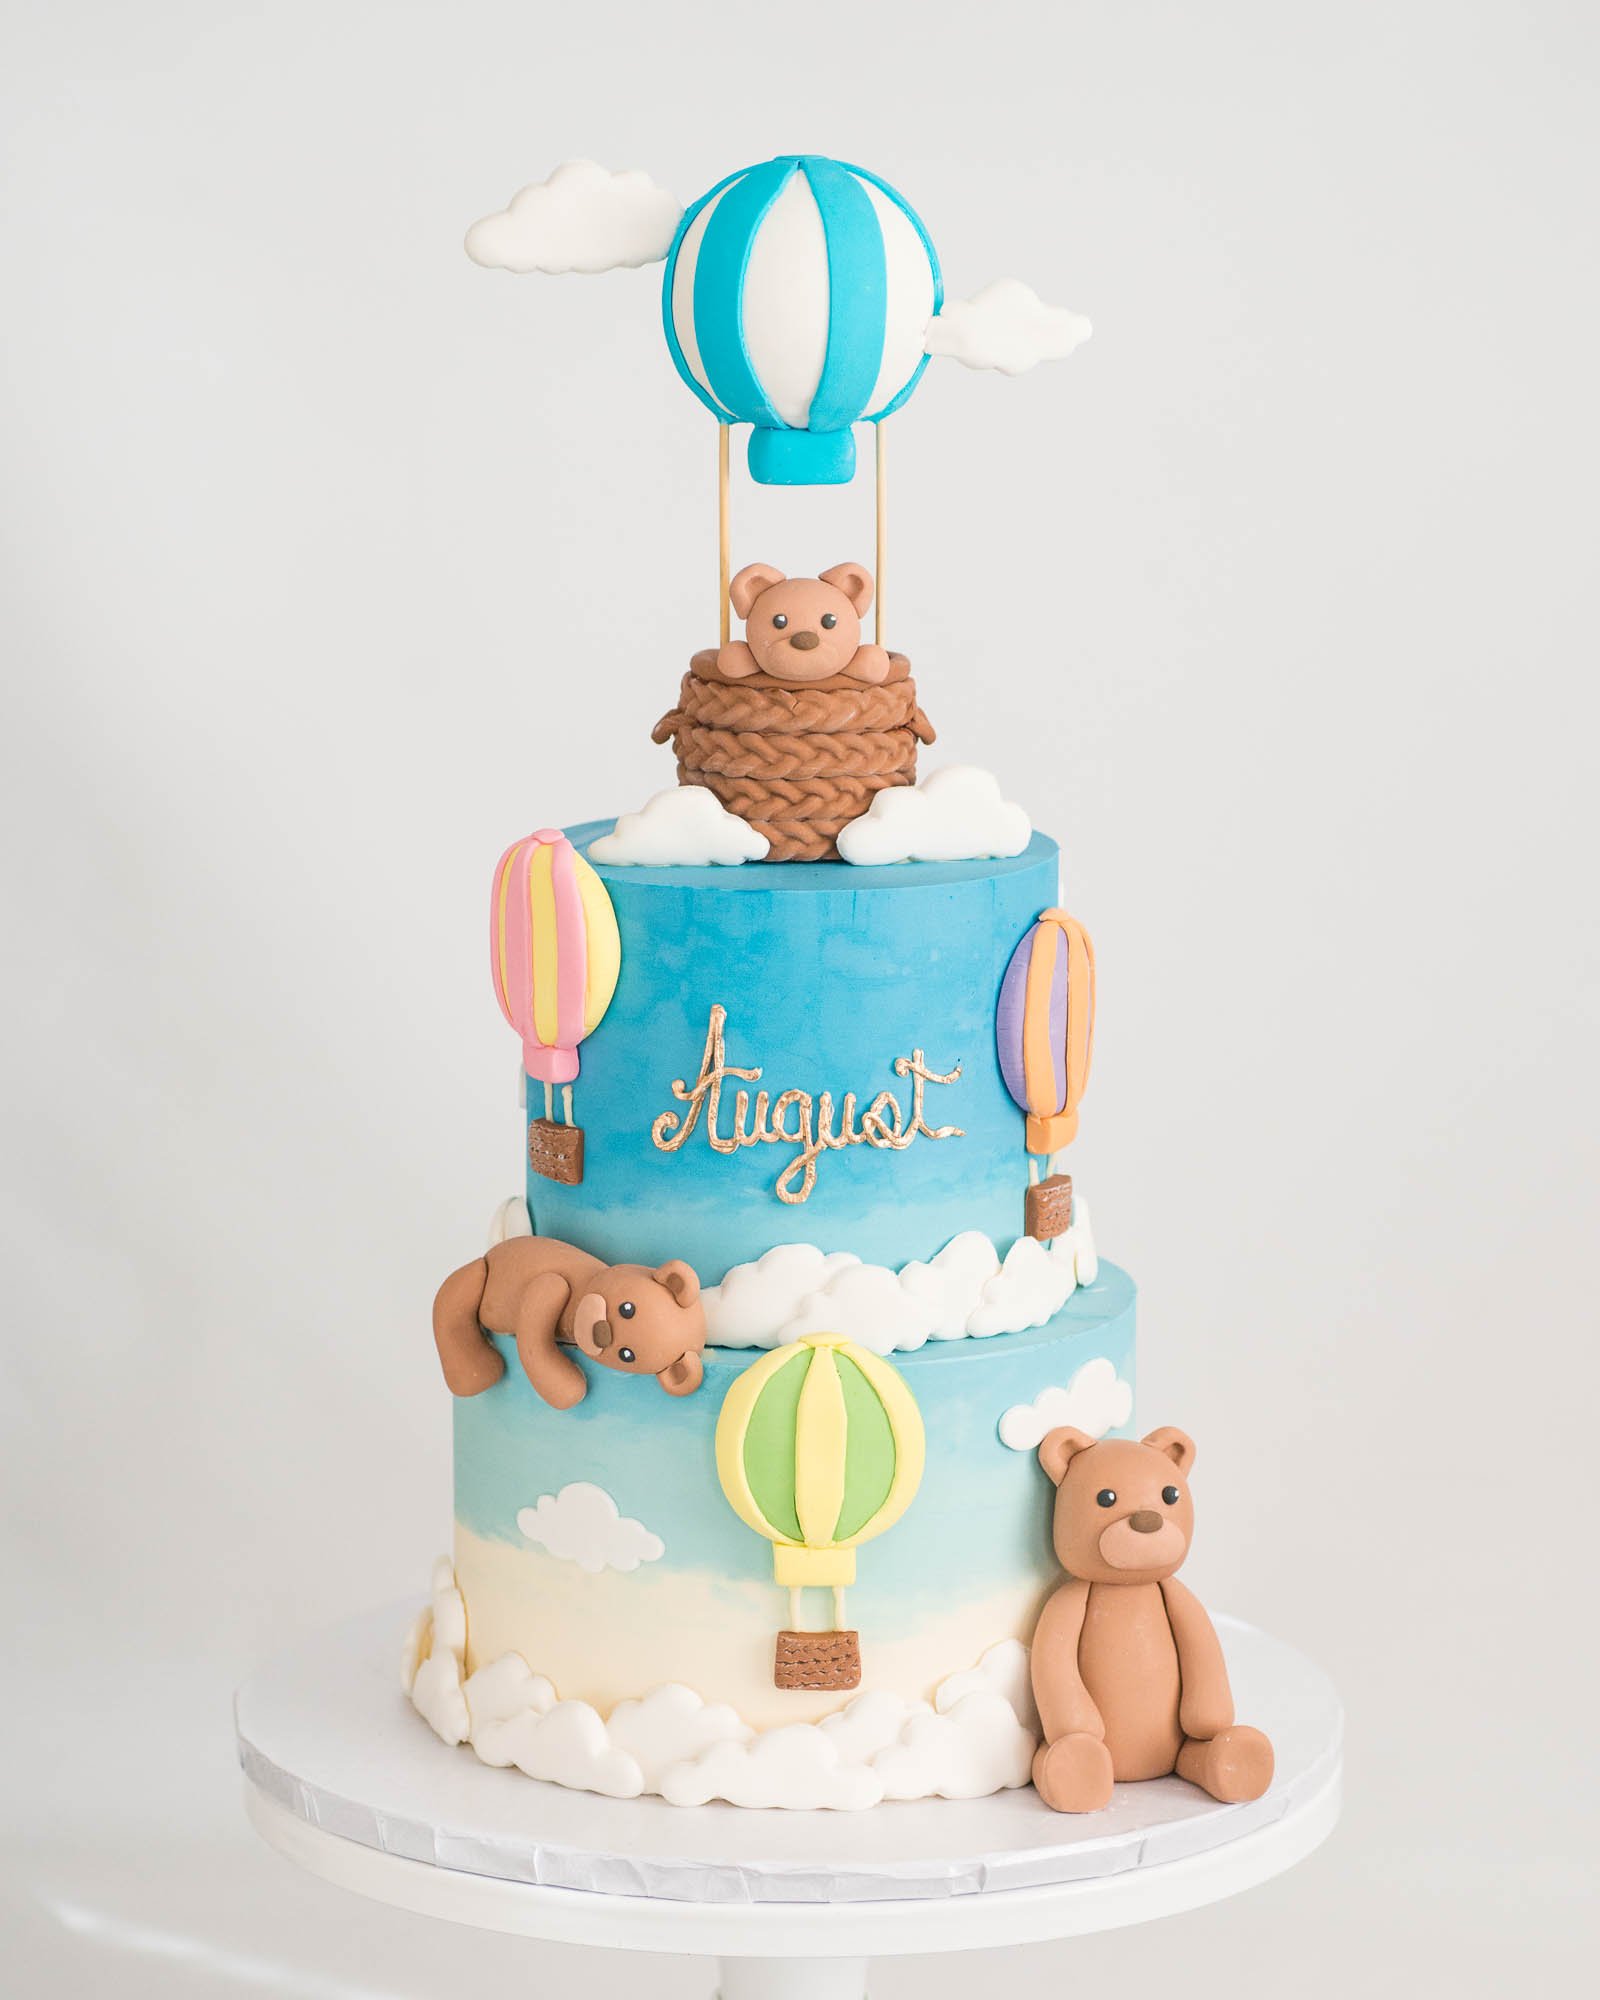 Baby Shower Cakes - Moonlight Cakes-mncb.edu.vn